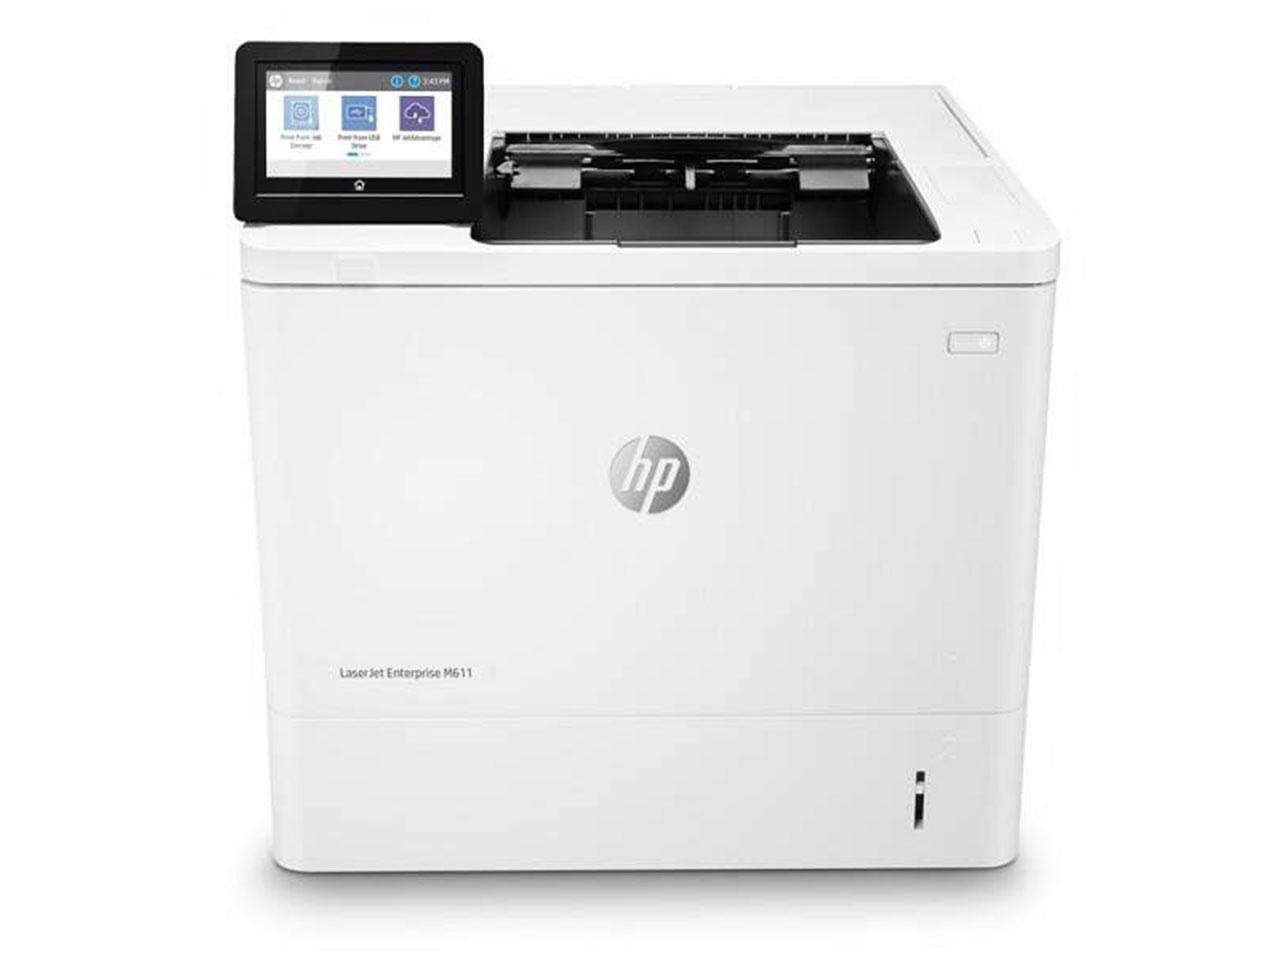 Multifunkční tiskárna HP LaserJet Enterprise M611dn s prodlouženou zárukou na 4 roky!